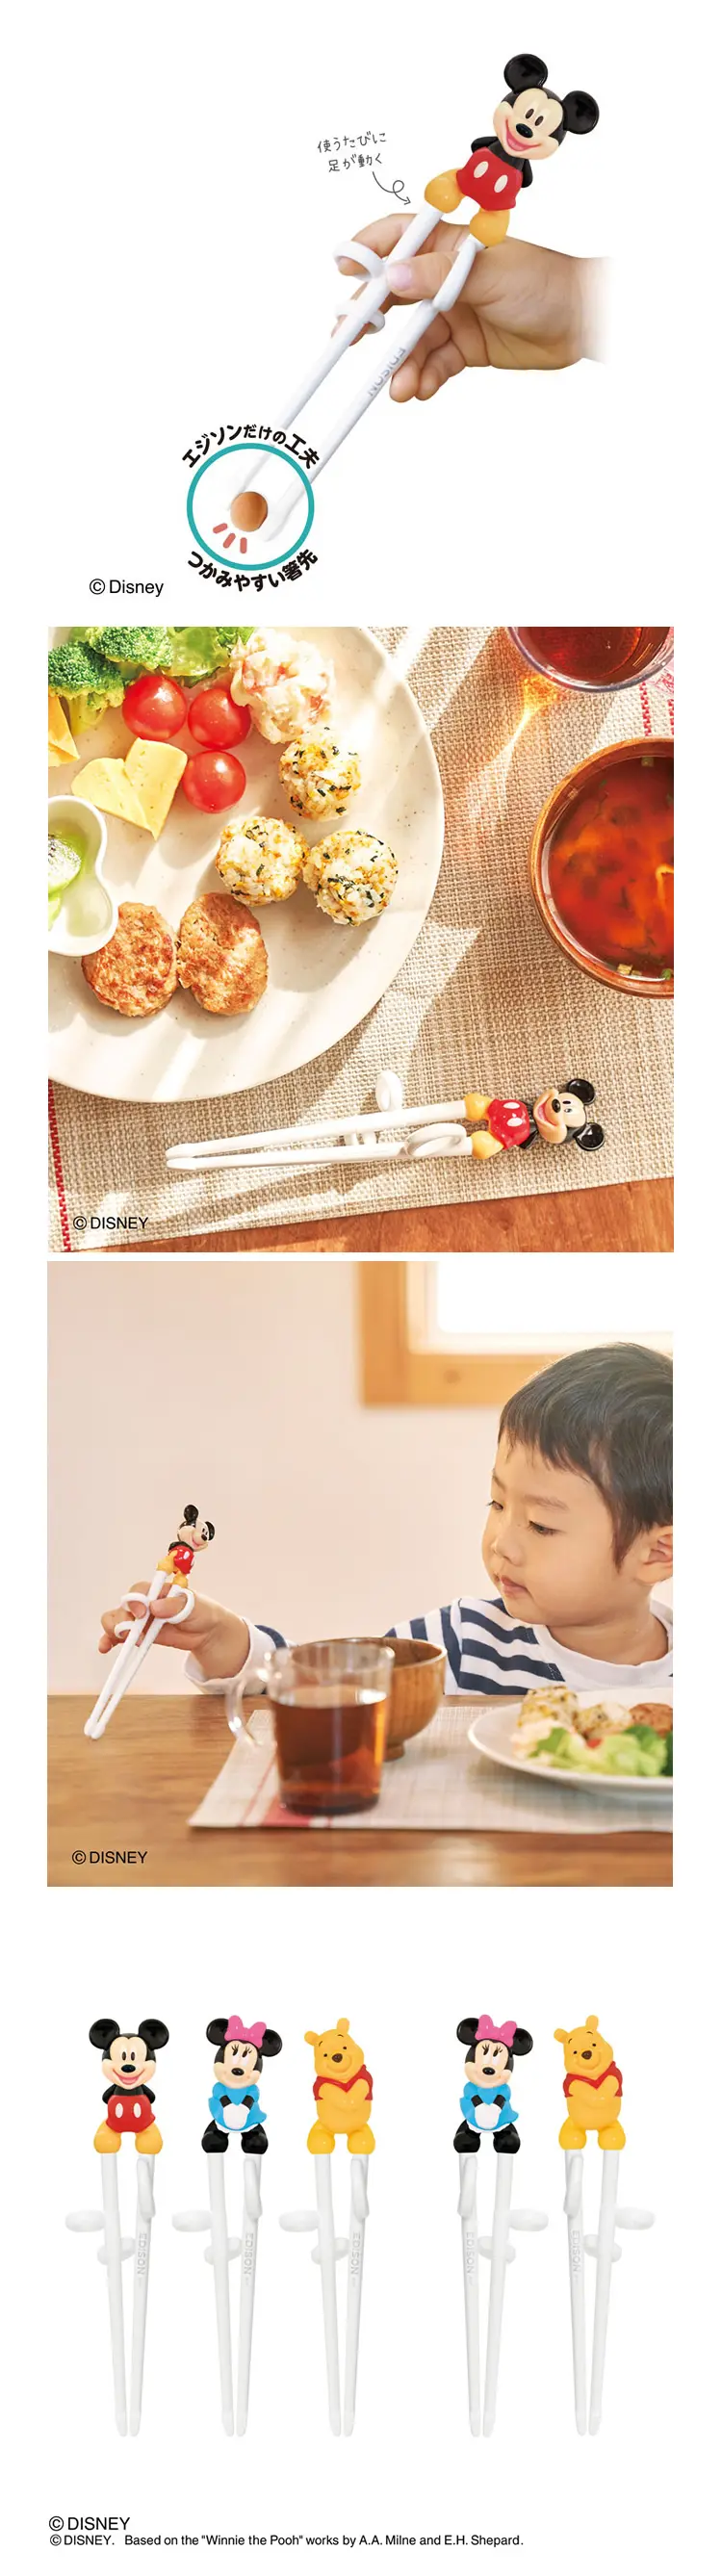 Edison 学习筷子(右手用)-维尼熊